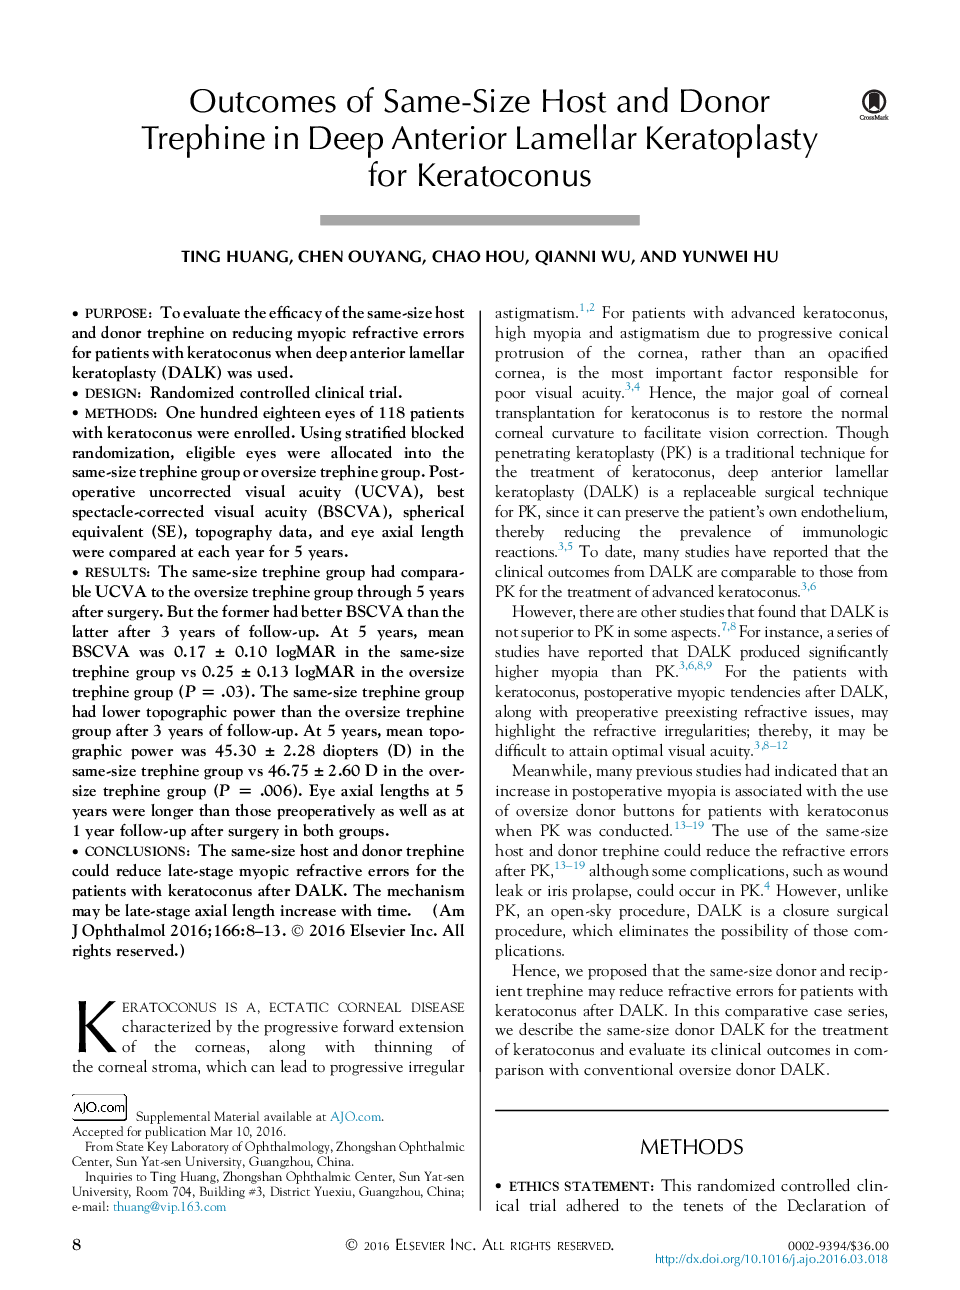 نتایج از میزبان یکسان و تریفین دونر در کراتوپلاستی لمینال عمیق قدامی برای کراتوکونوس 